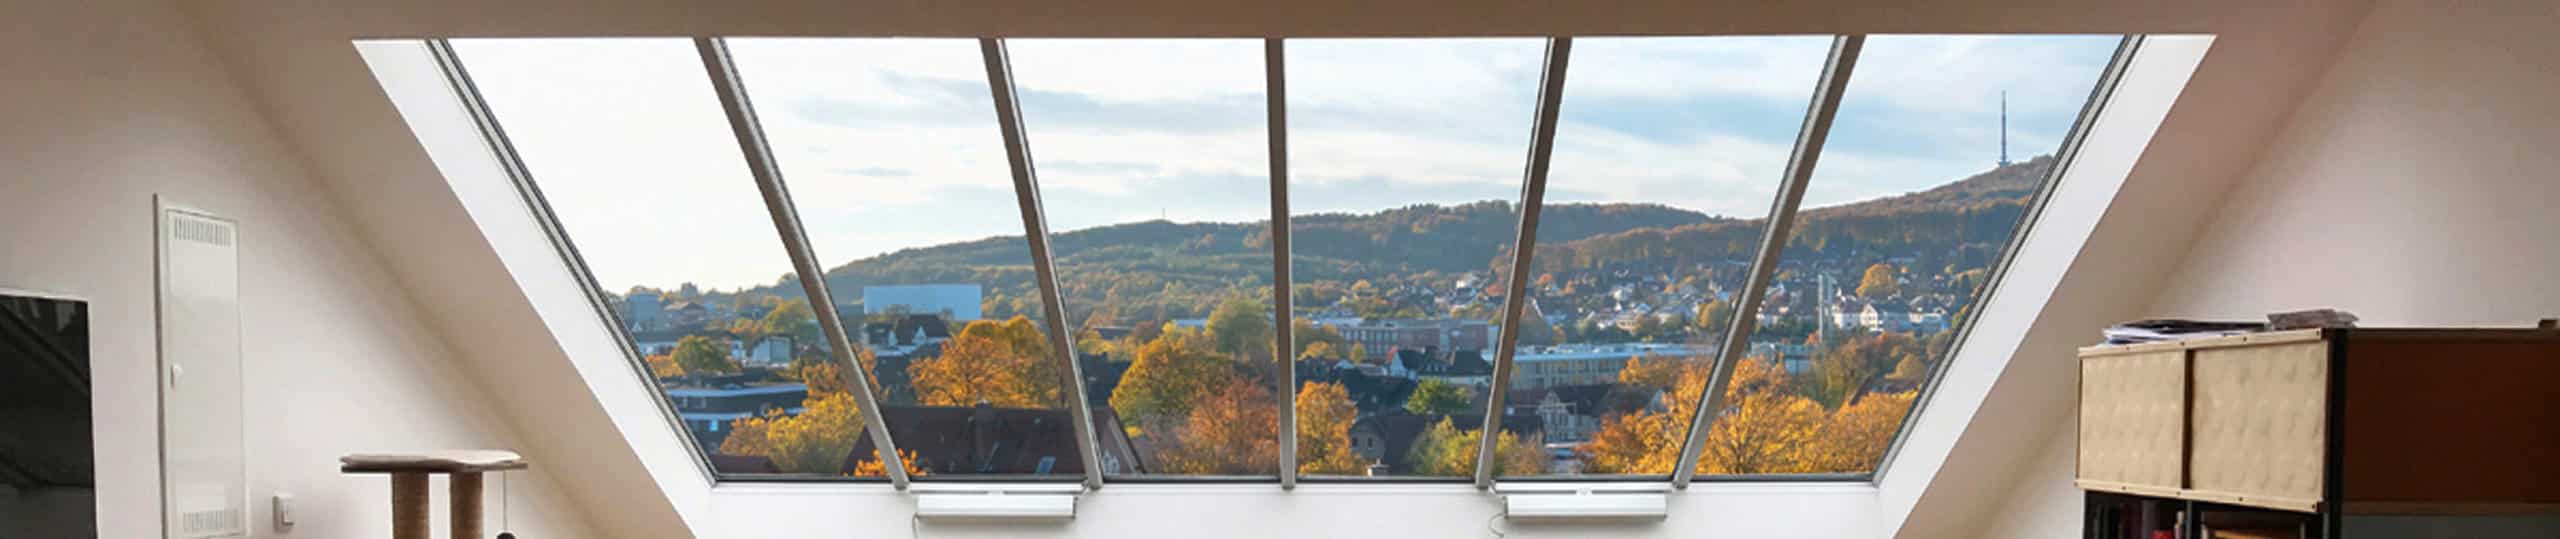 Dachverglasung: Innenansicht eines GLASOLUX Panoramafensters in einem Steildach